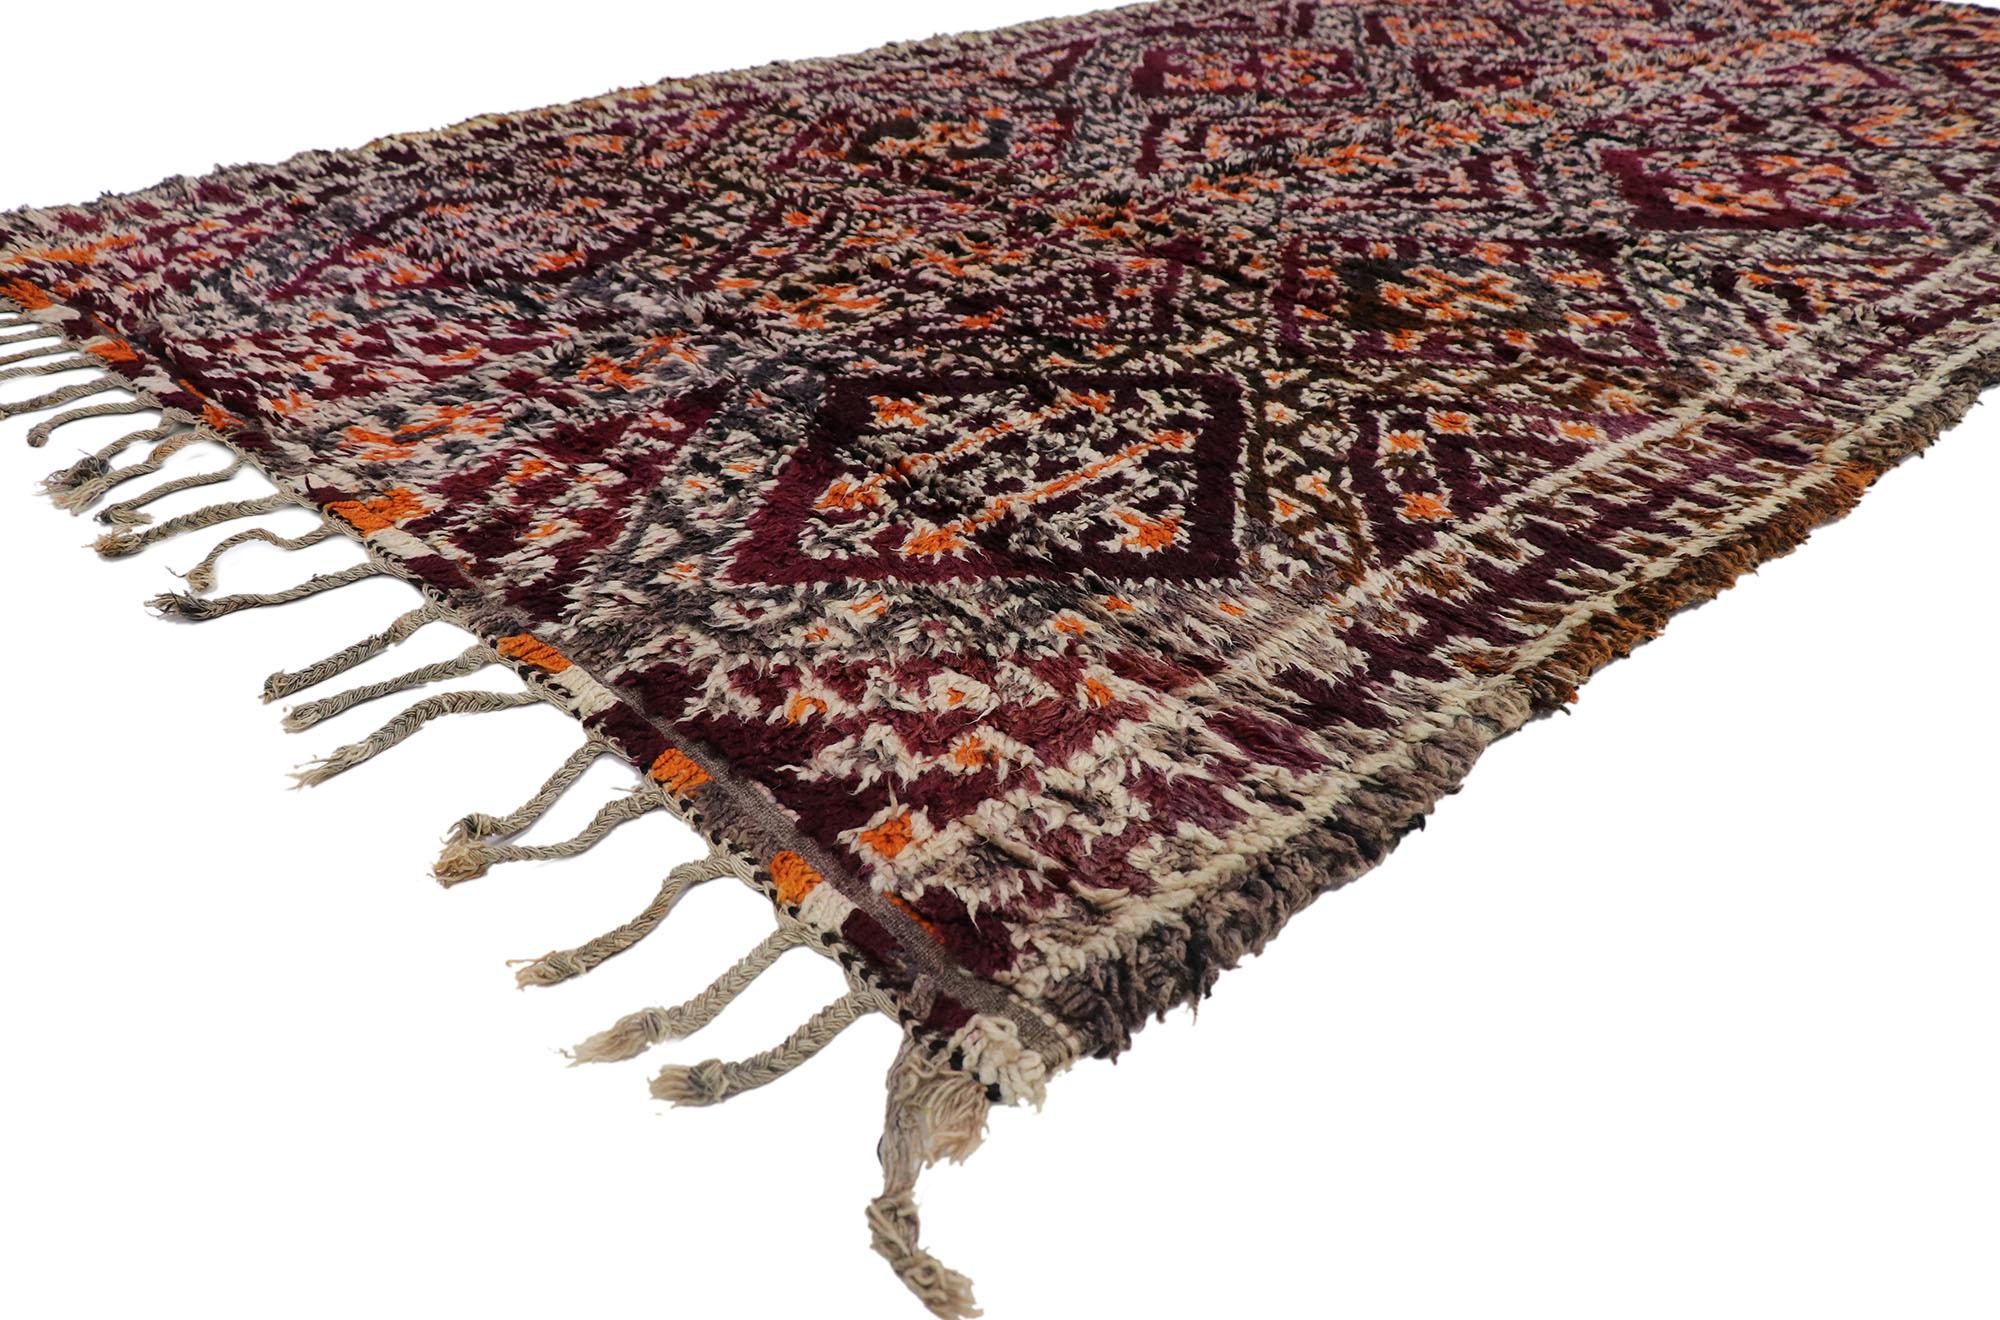 21304 Vintage Berber Beni M'Guild Marokkanischer Teppich mit Bohemian Tribal Style 05'10 x 11'07. Dieser handgeknüpfte marokkanische Beni M'Guild-Teppich aus alter Berberwolle besticht durch sein kühnes, ausdrucksstarkes Design, seine unglaublichen